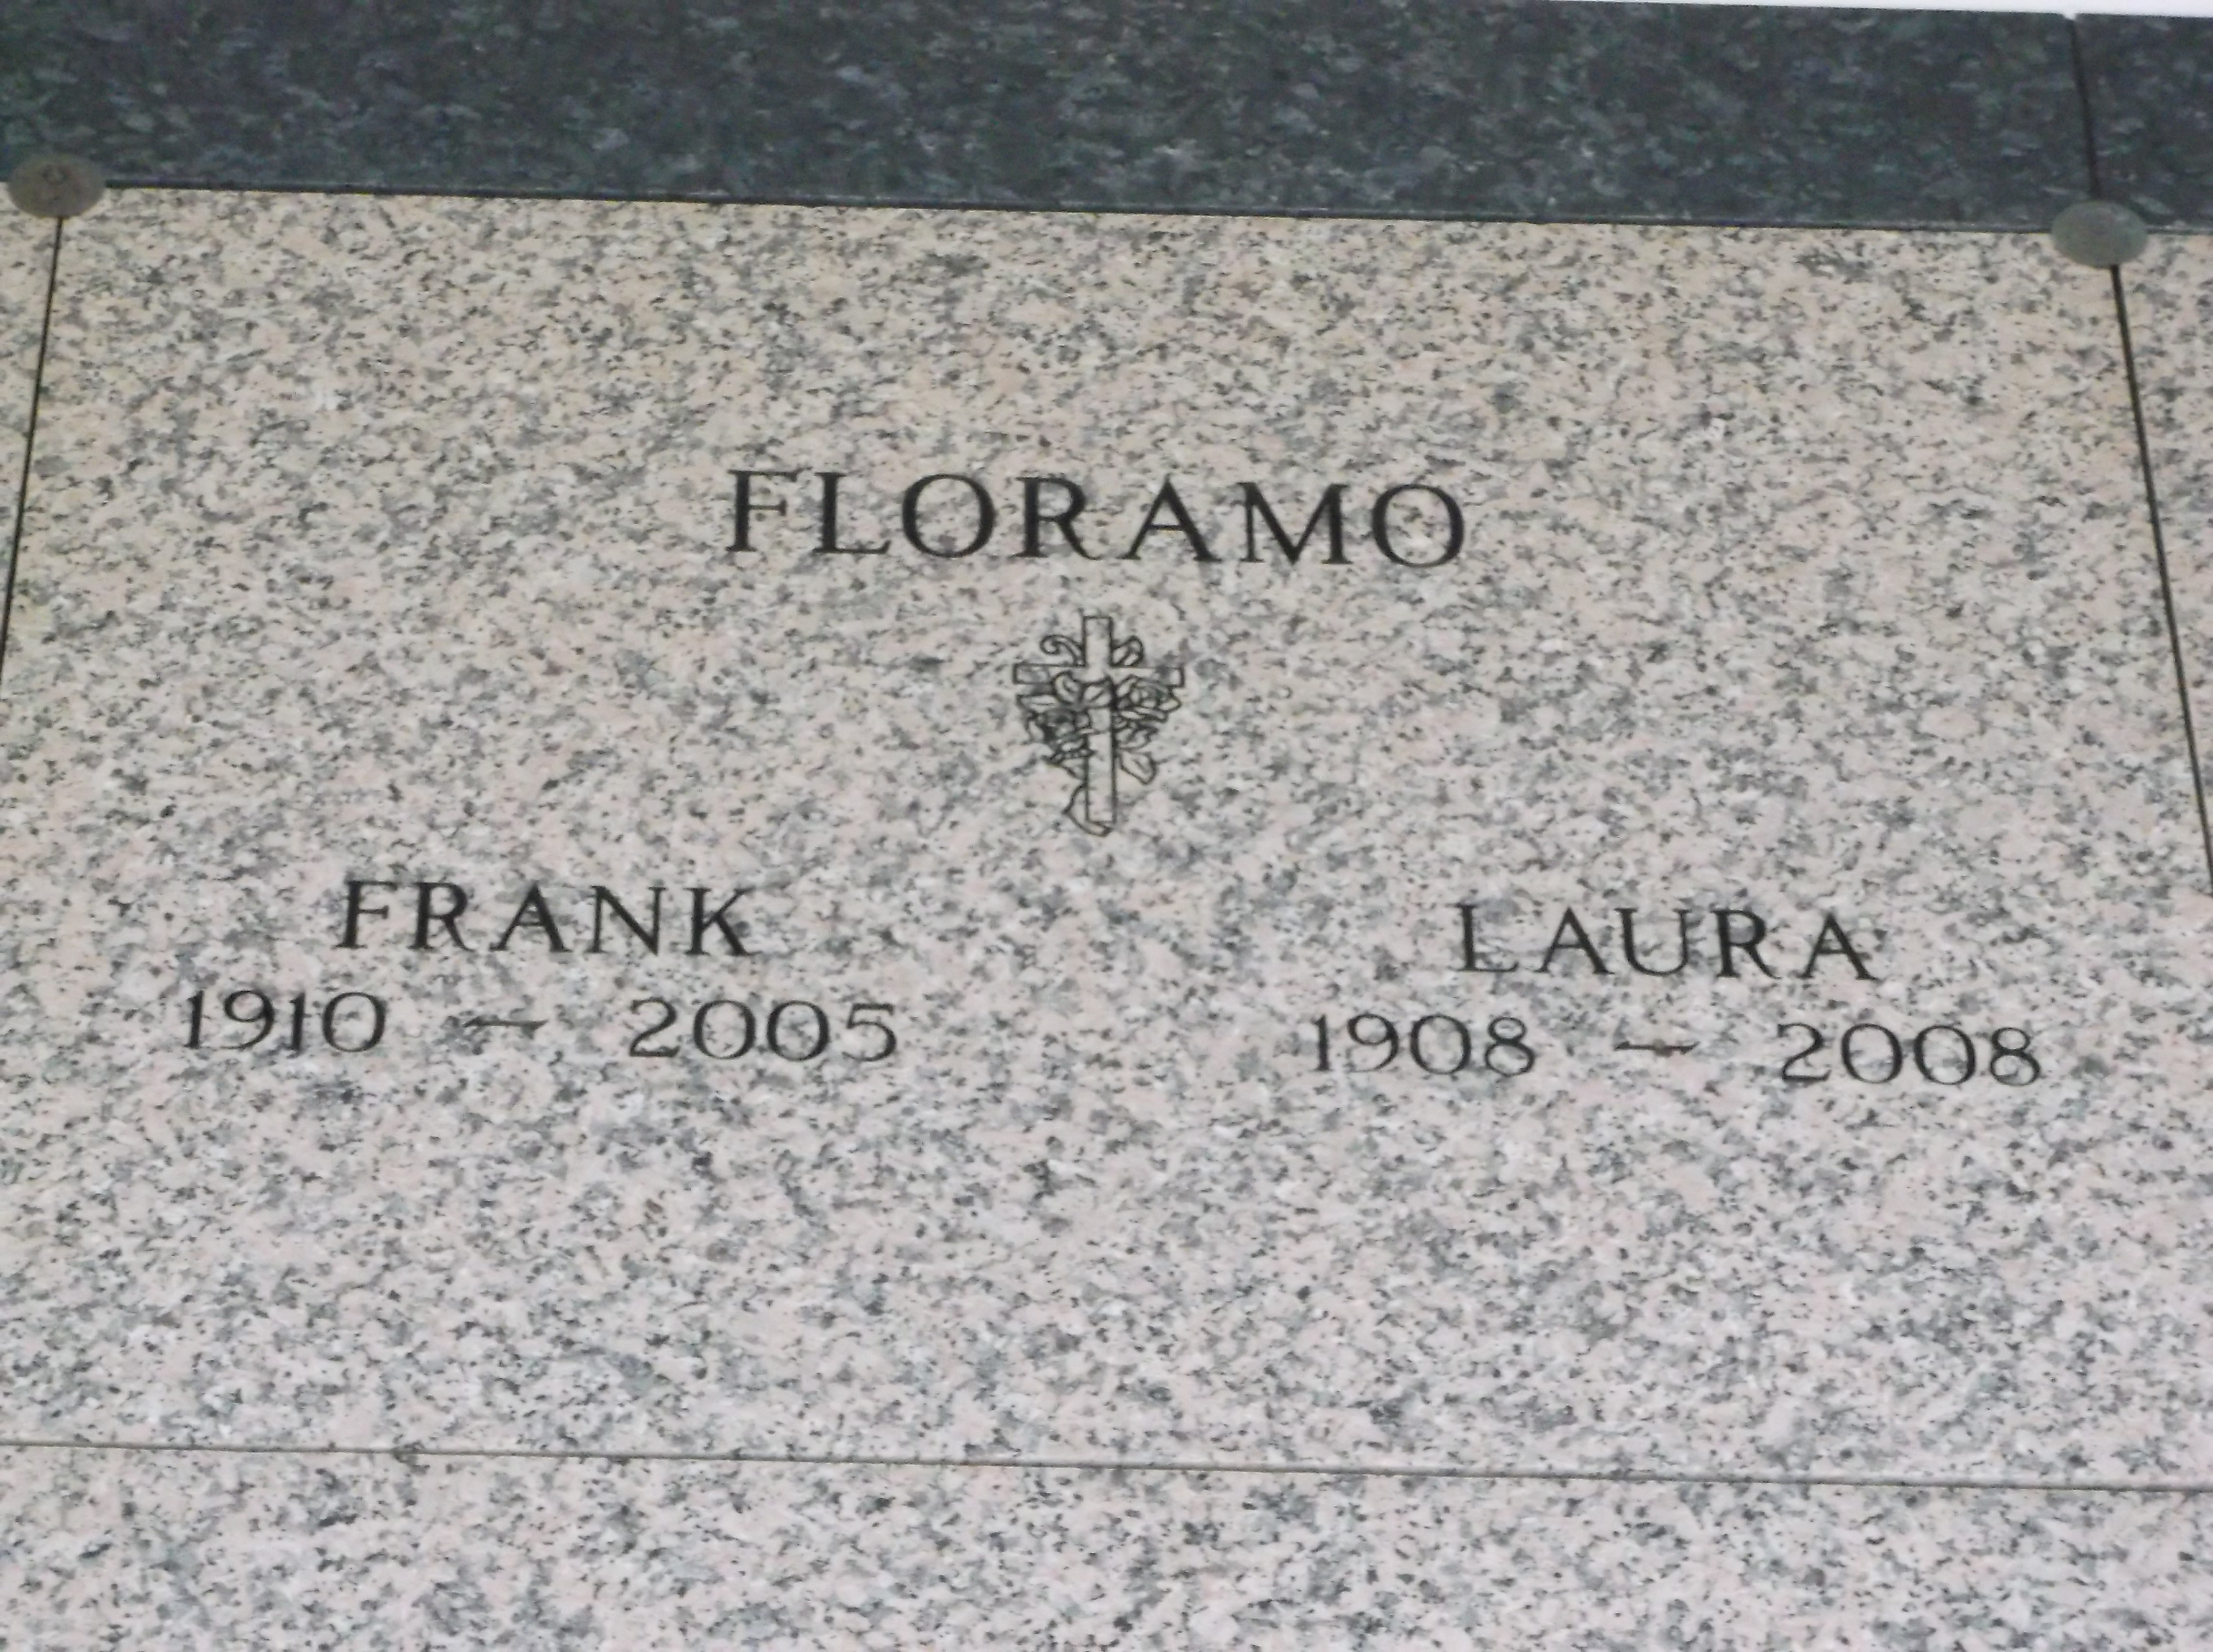 Laura Floramo